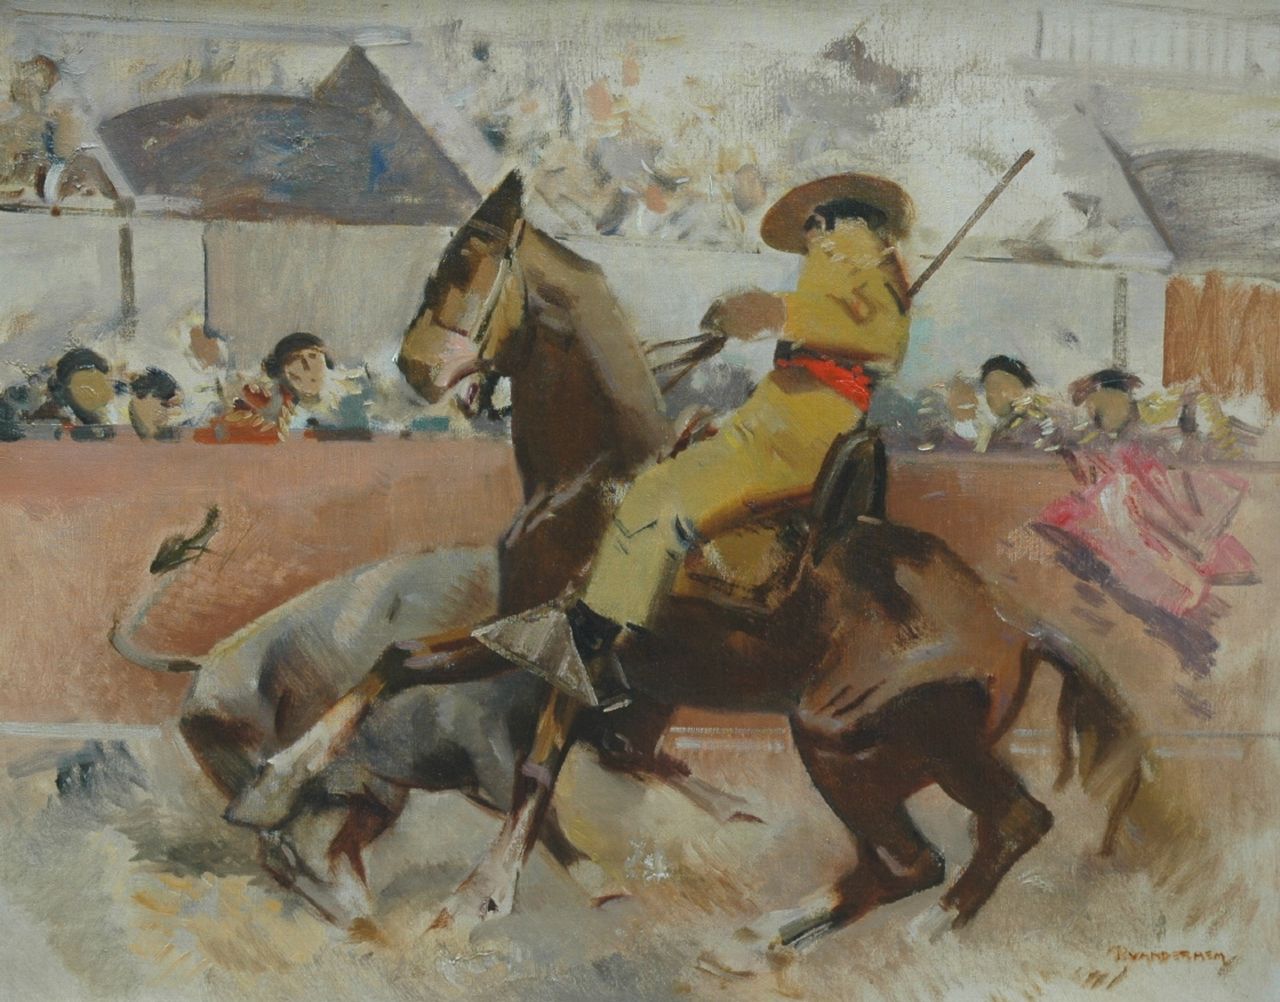 Hem P. van der | Pieter 'Piet' van der Hem, Stierengevecht, olieverf op doek 61,5 x 77,2 cm, gesigneerd r.o